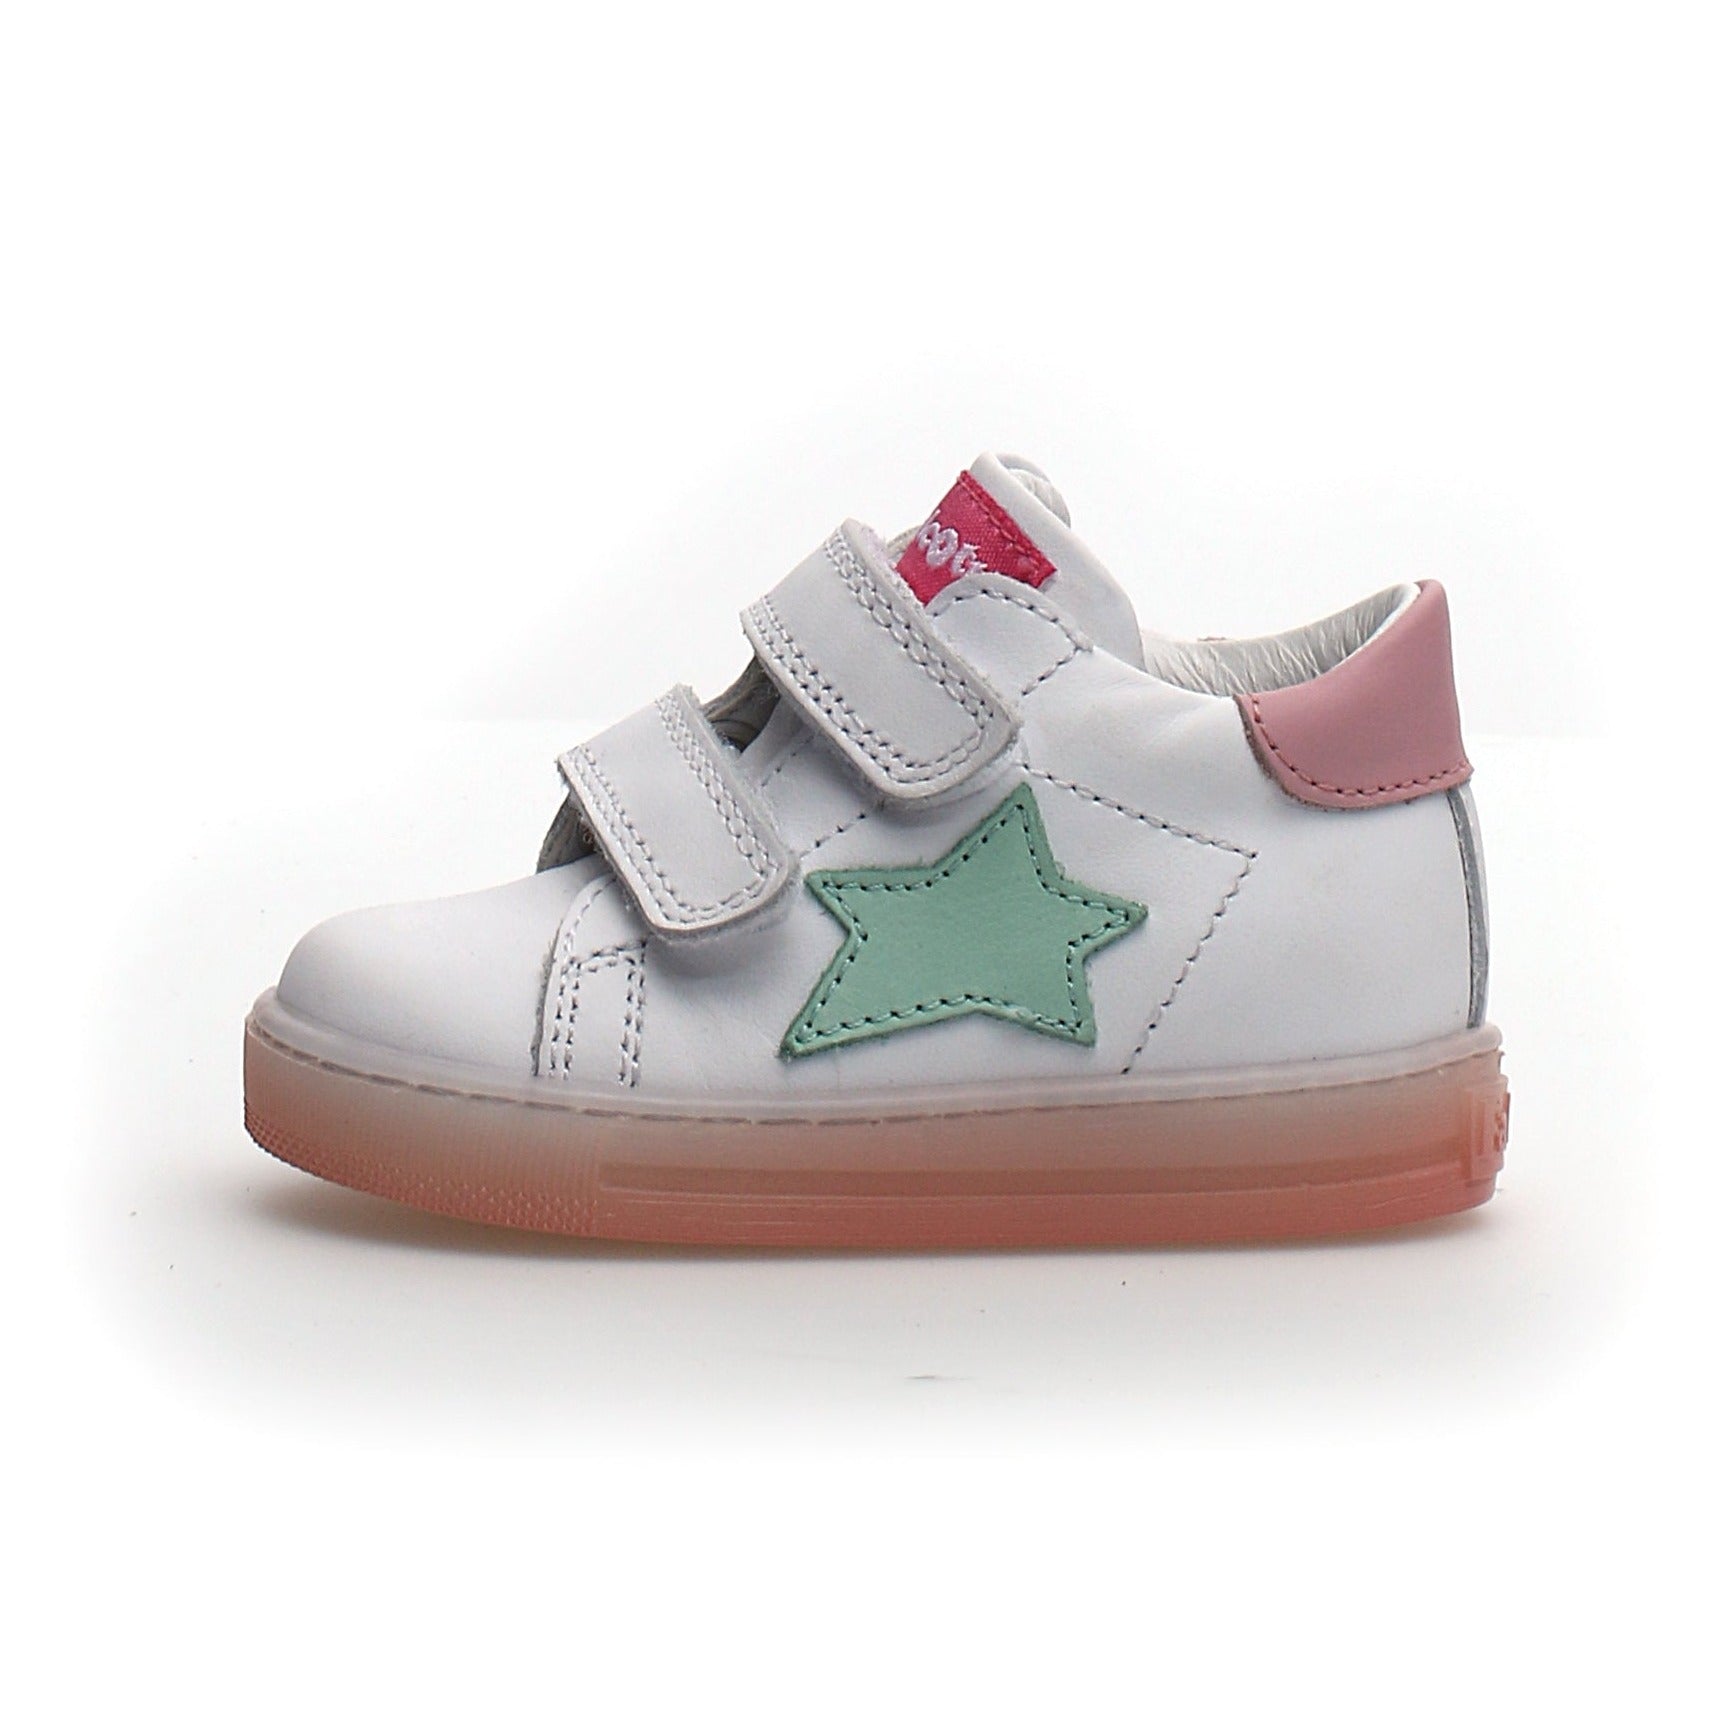 Naturino Falcotto Girl's Sasha Vl Calf Fashion Sneakers - White/Pink ...